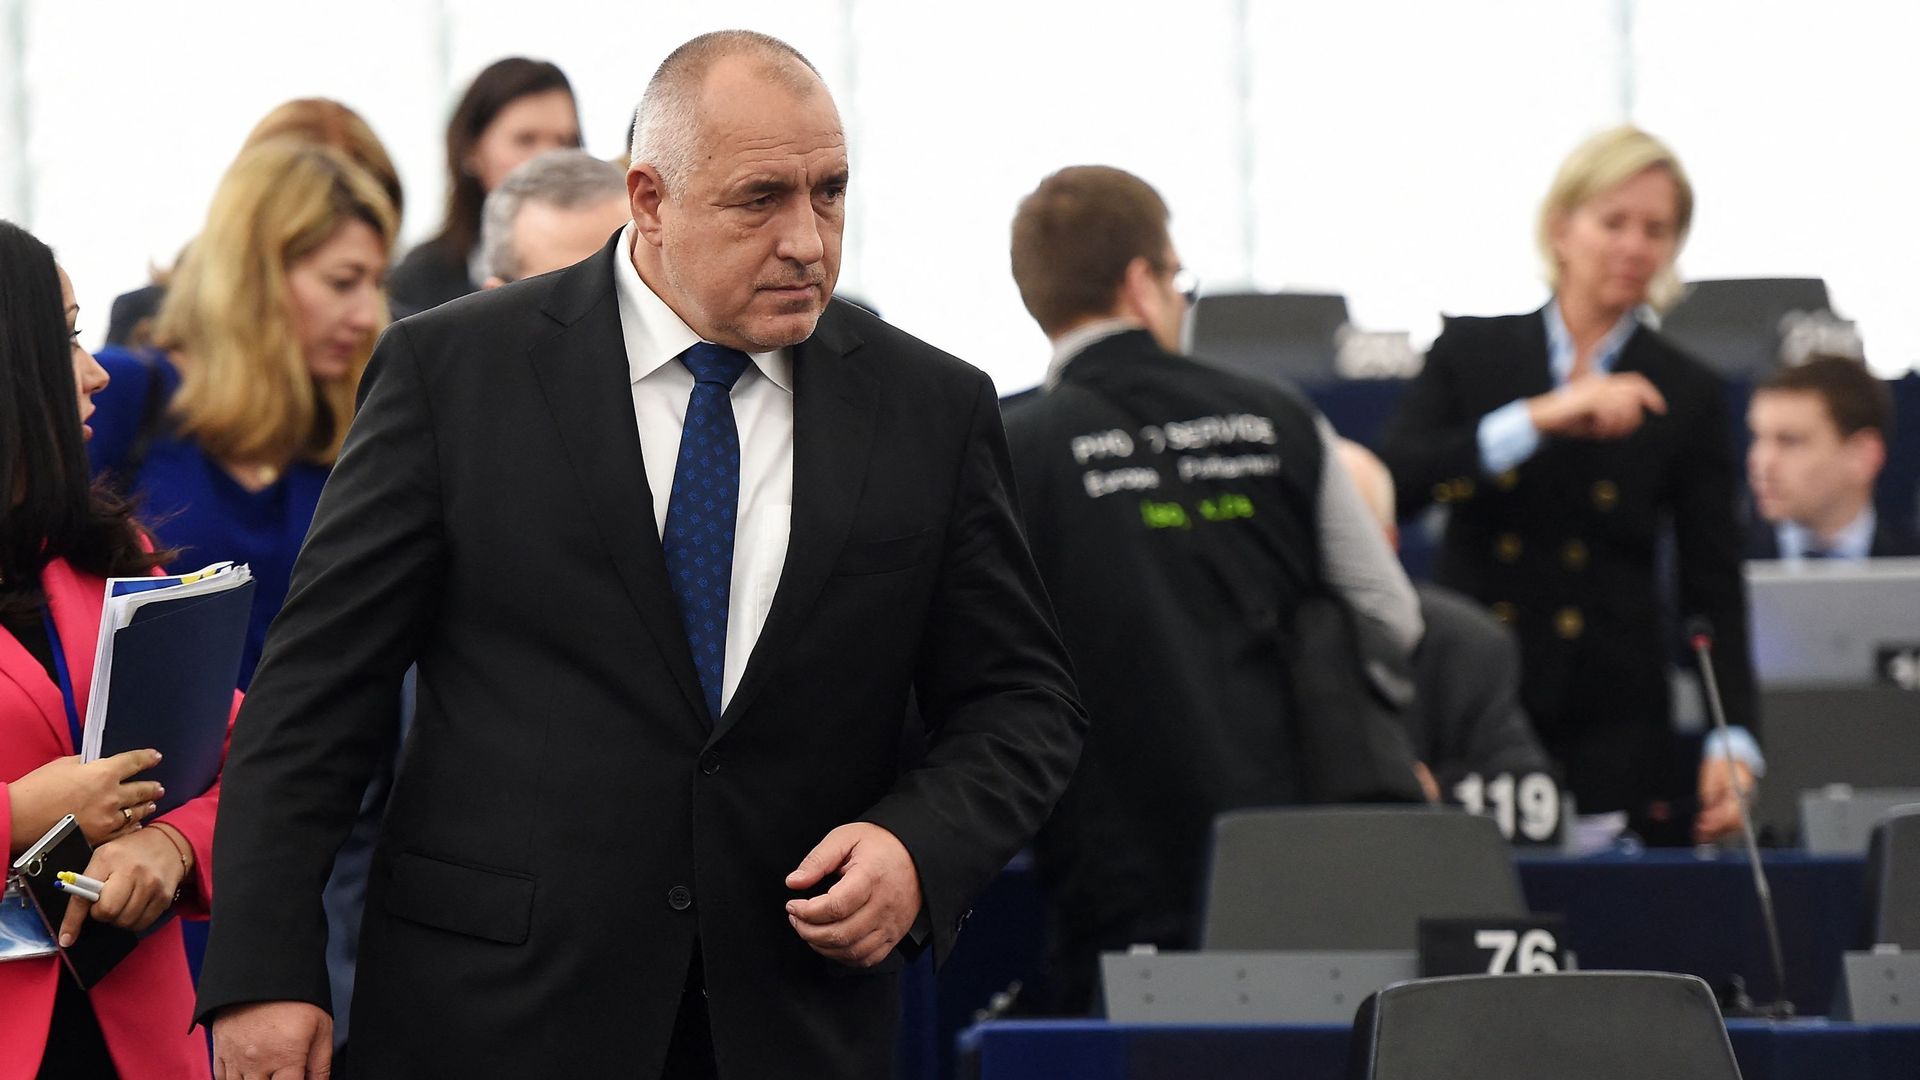 Le Premier ministre bulgare Boiko Borissov arrive pour présenter les priorités de la prochaine présidence du Conseil de l'UE, au Parlement européen, le 17 janvier 2018 à Strasbourg, dans l'est de la France.